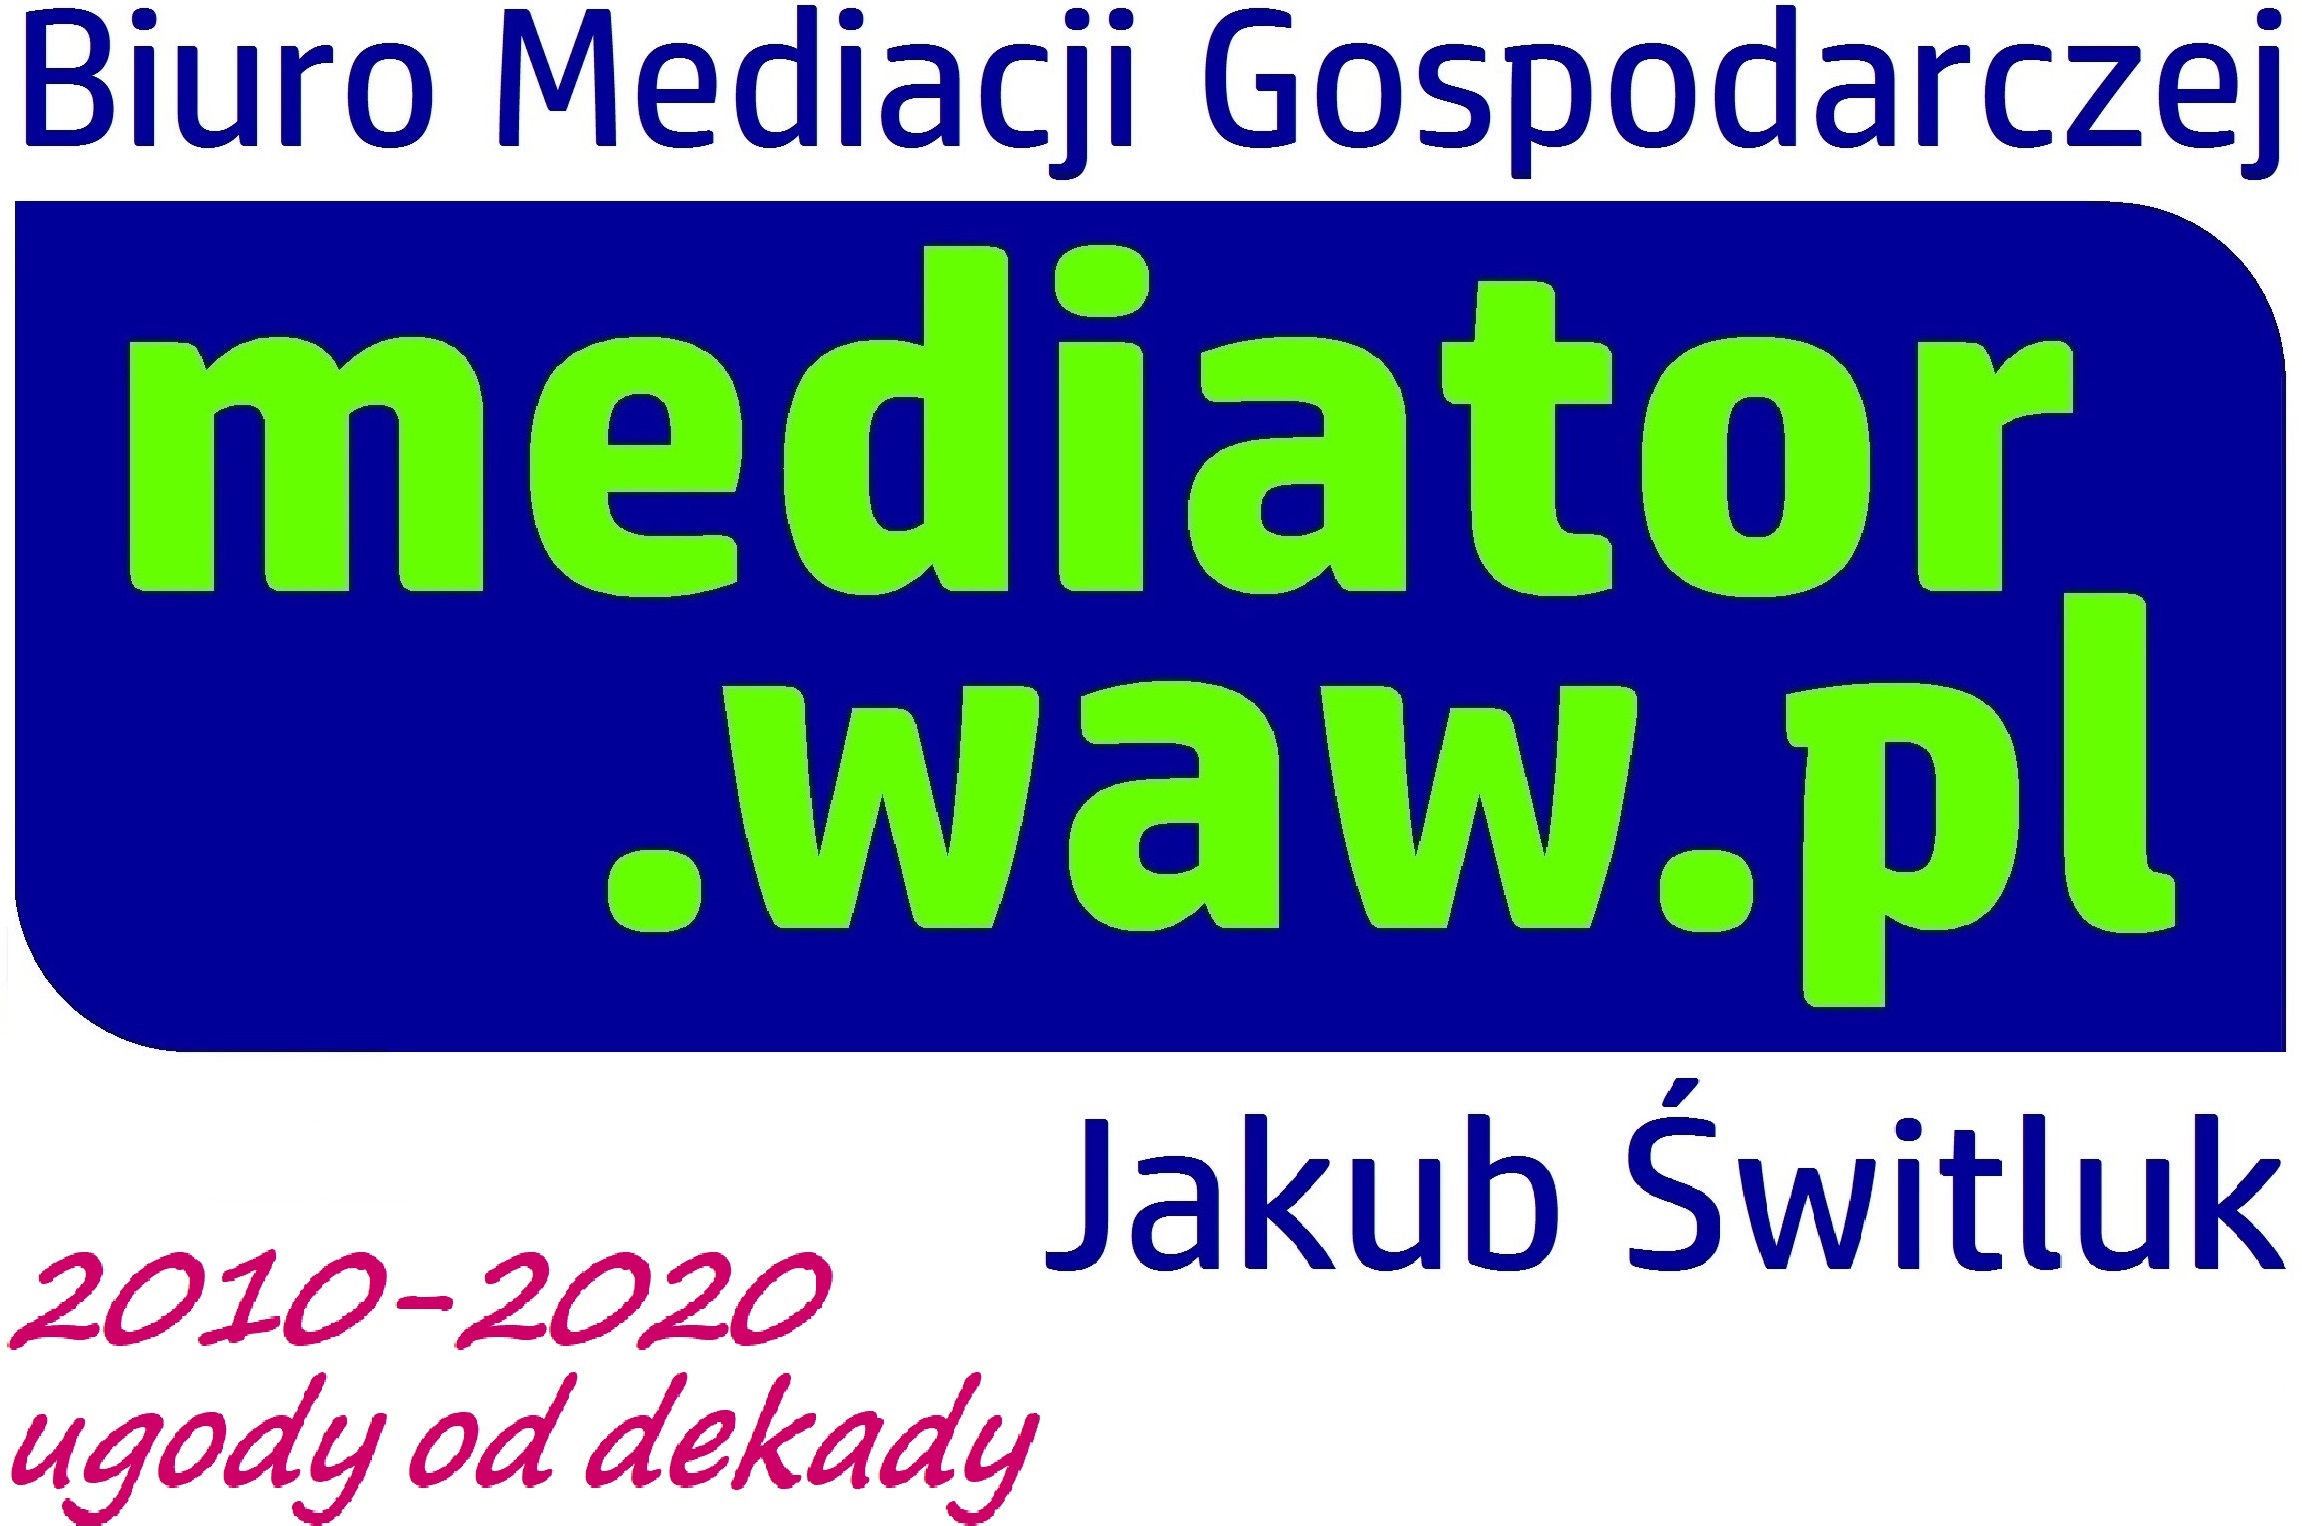 Biuro Mediacji Gospodarczej MEDIATOR.WAW.PL JAKUB ŚWITLUK